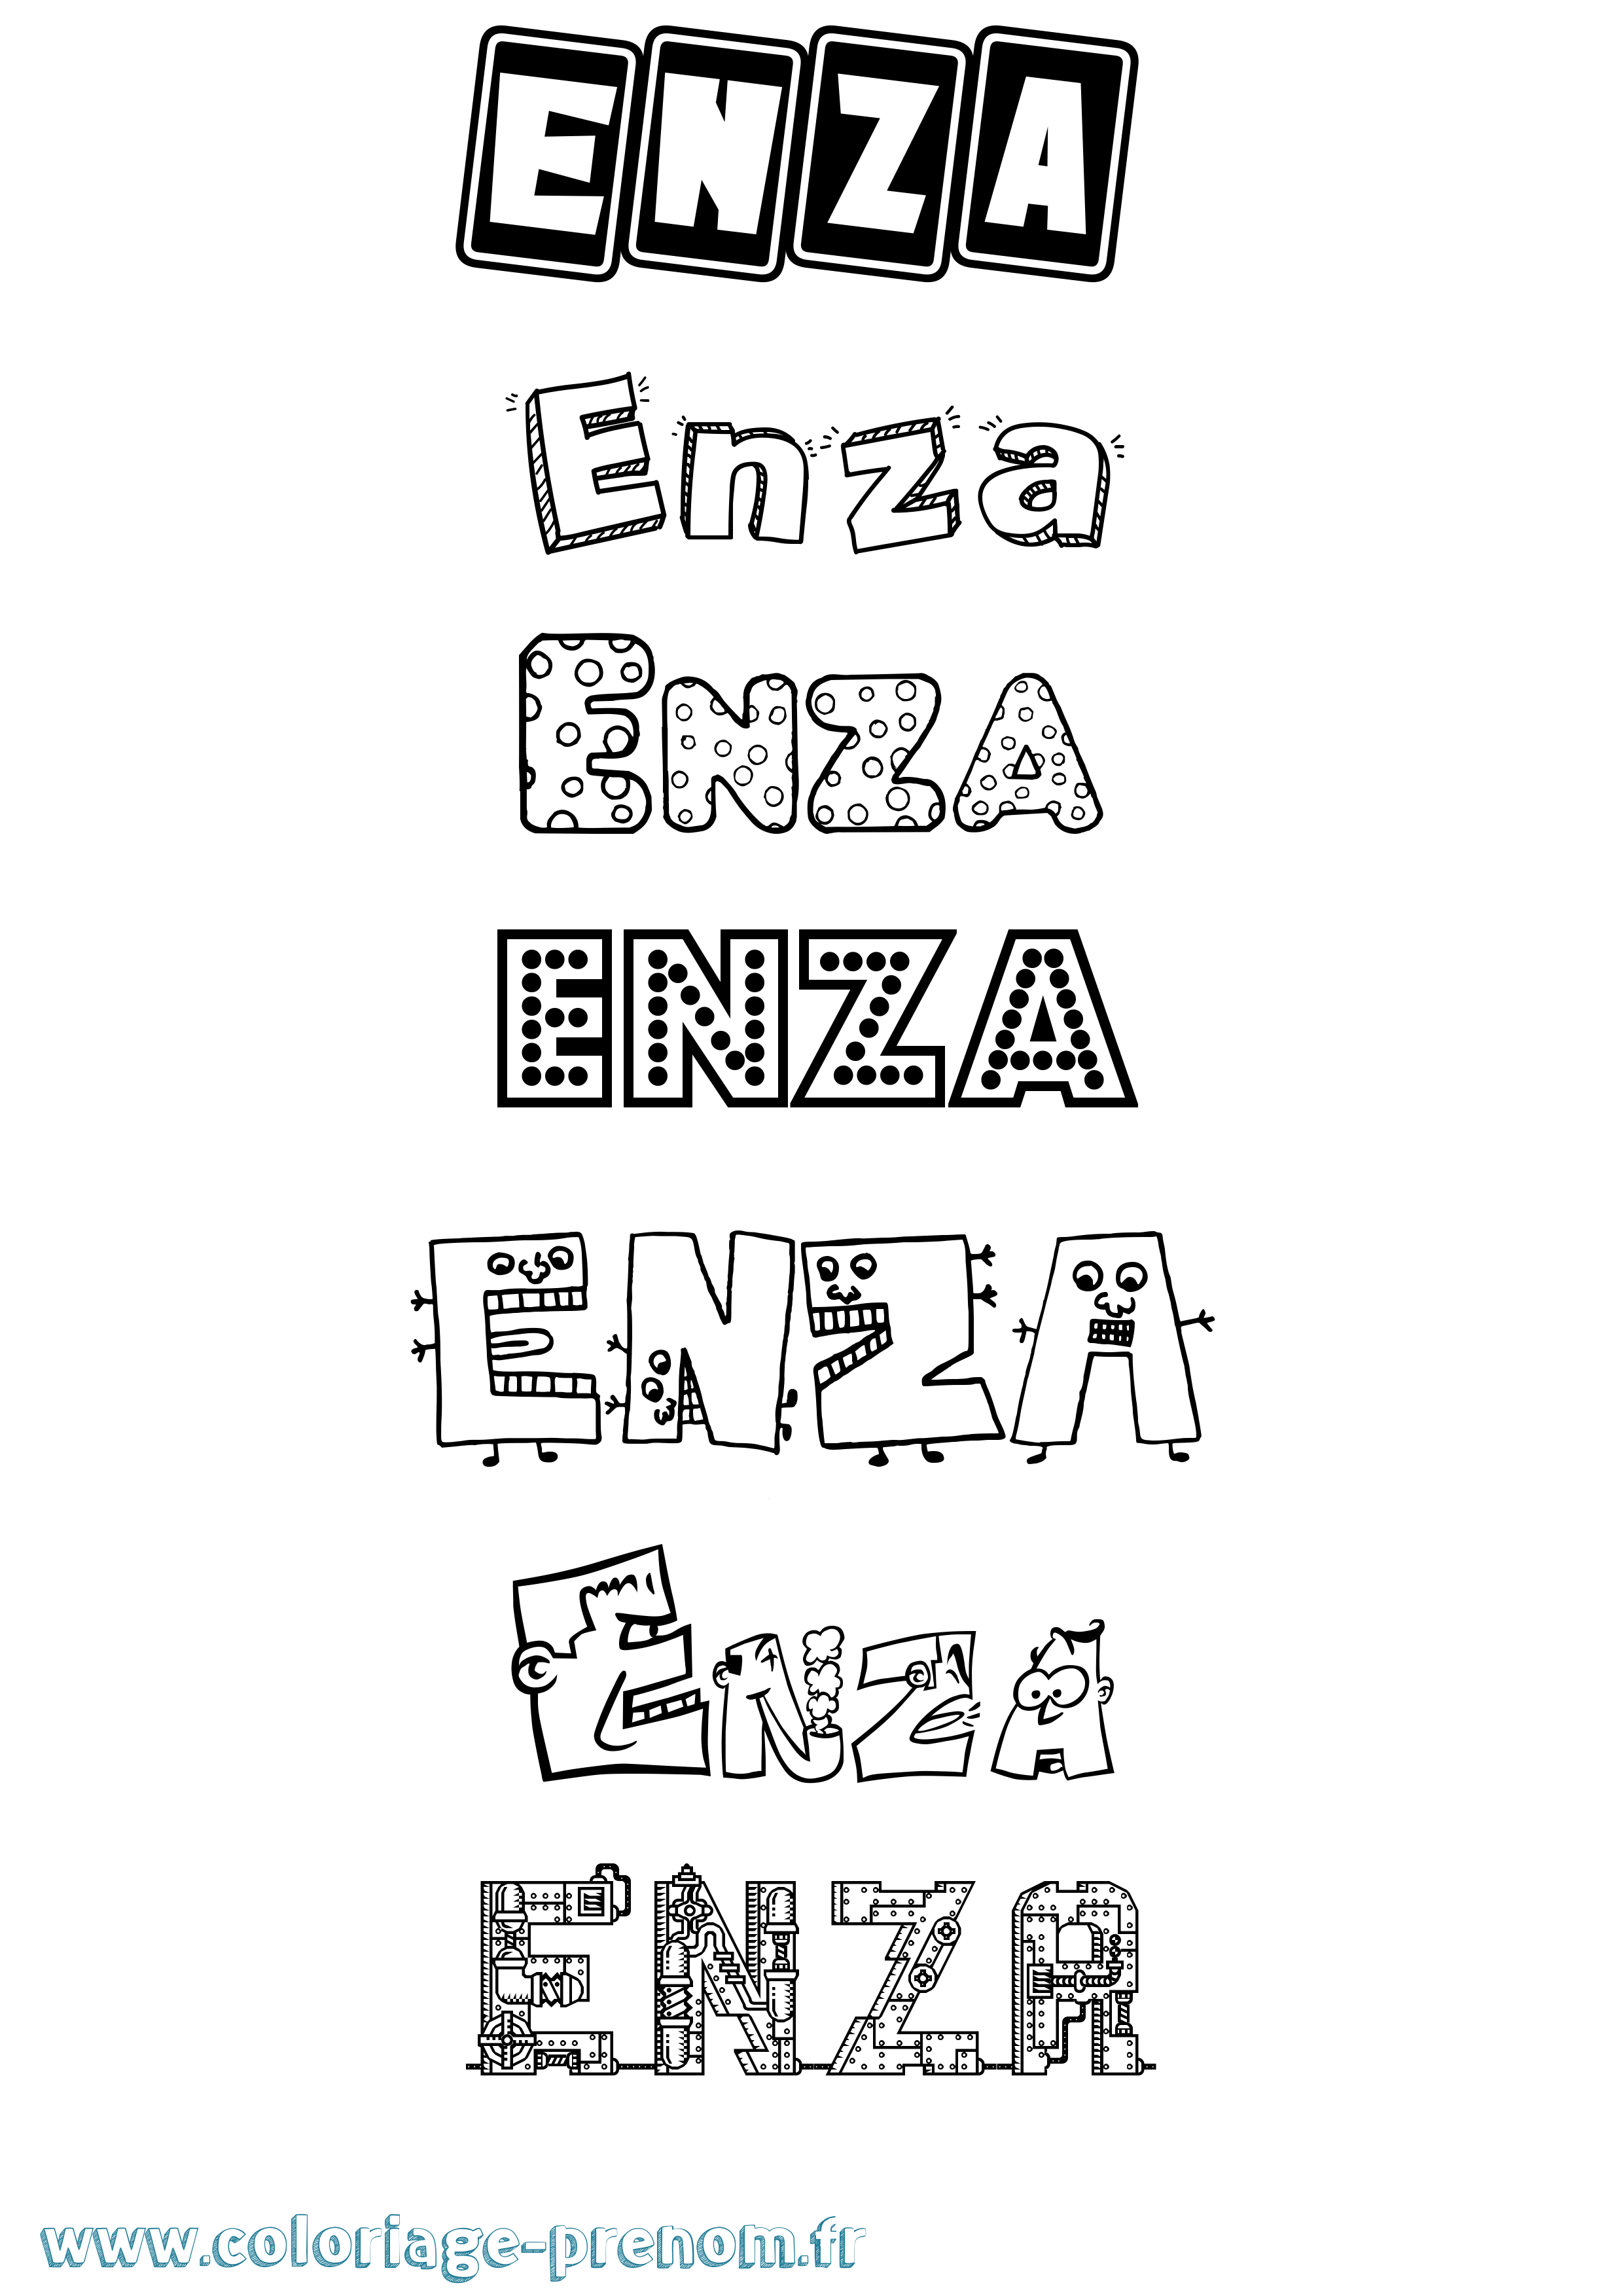 Coloriage prénom Enza Fun